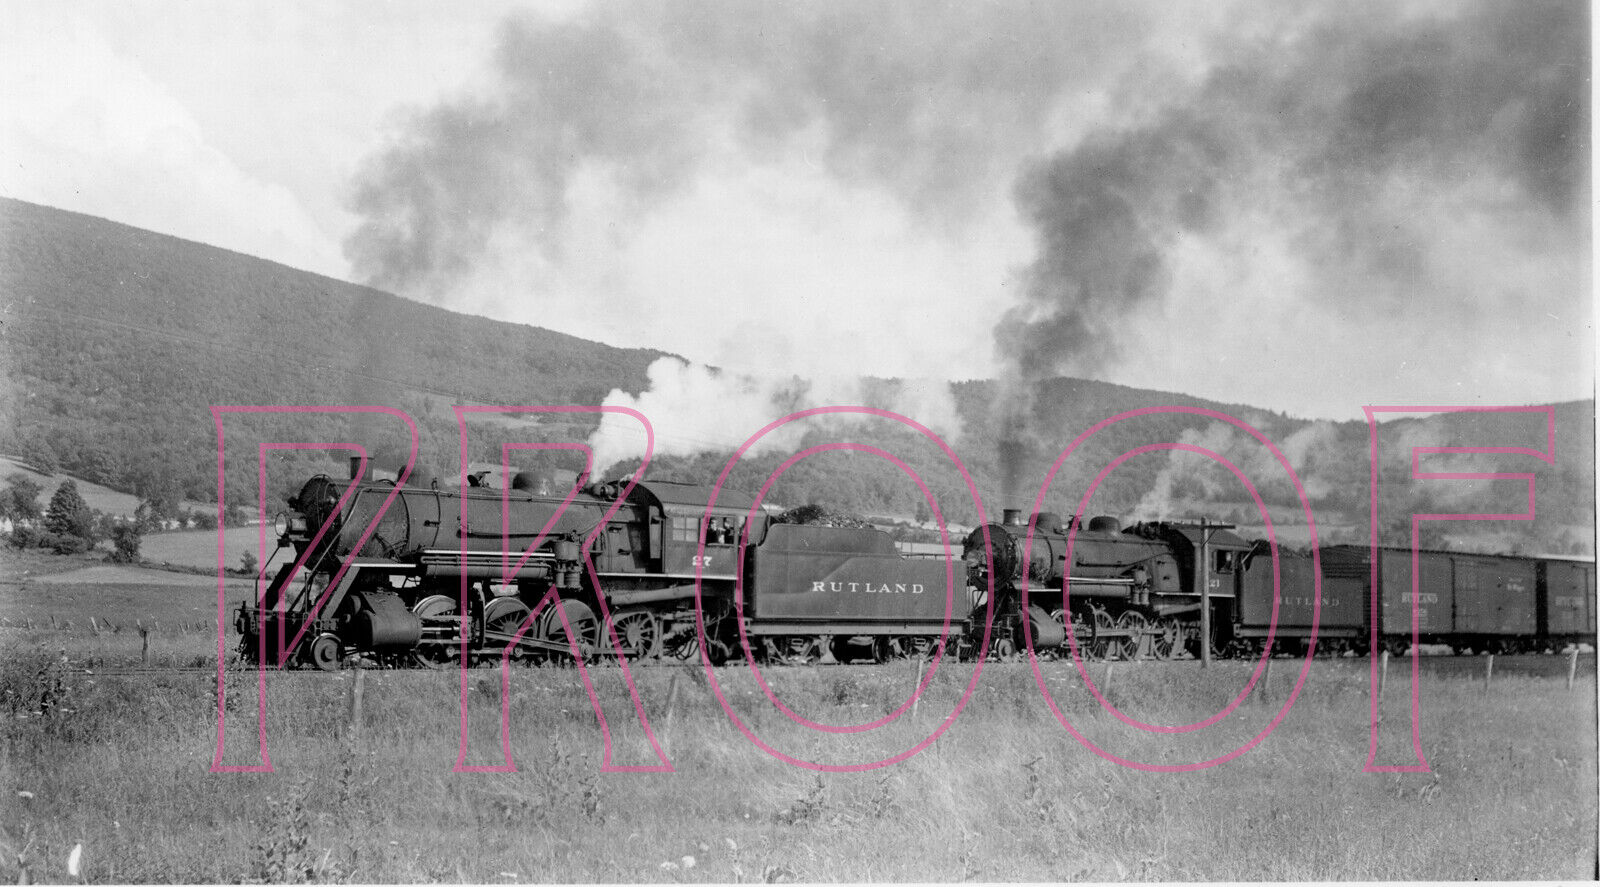 Rutland Railroad Engines 27 & 21 at Petersburg, NY in 1939 - 8x10 Photo